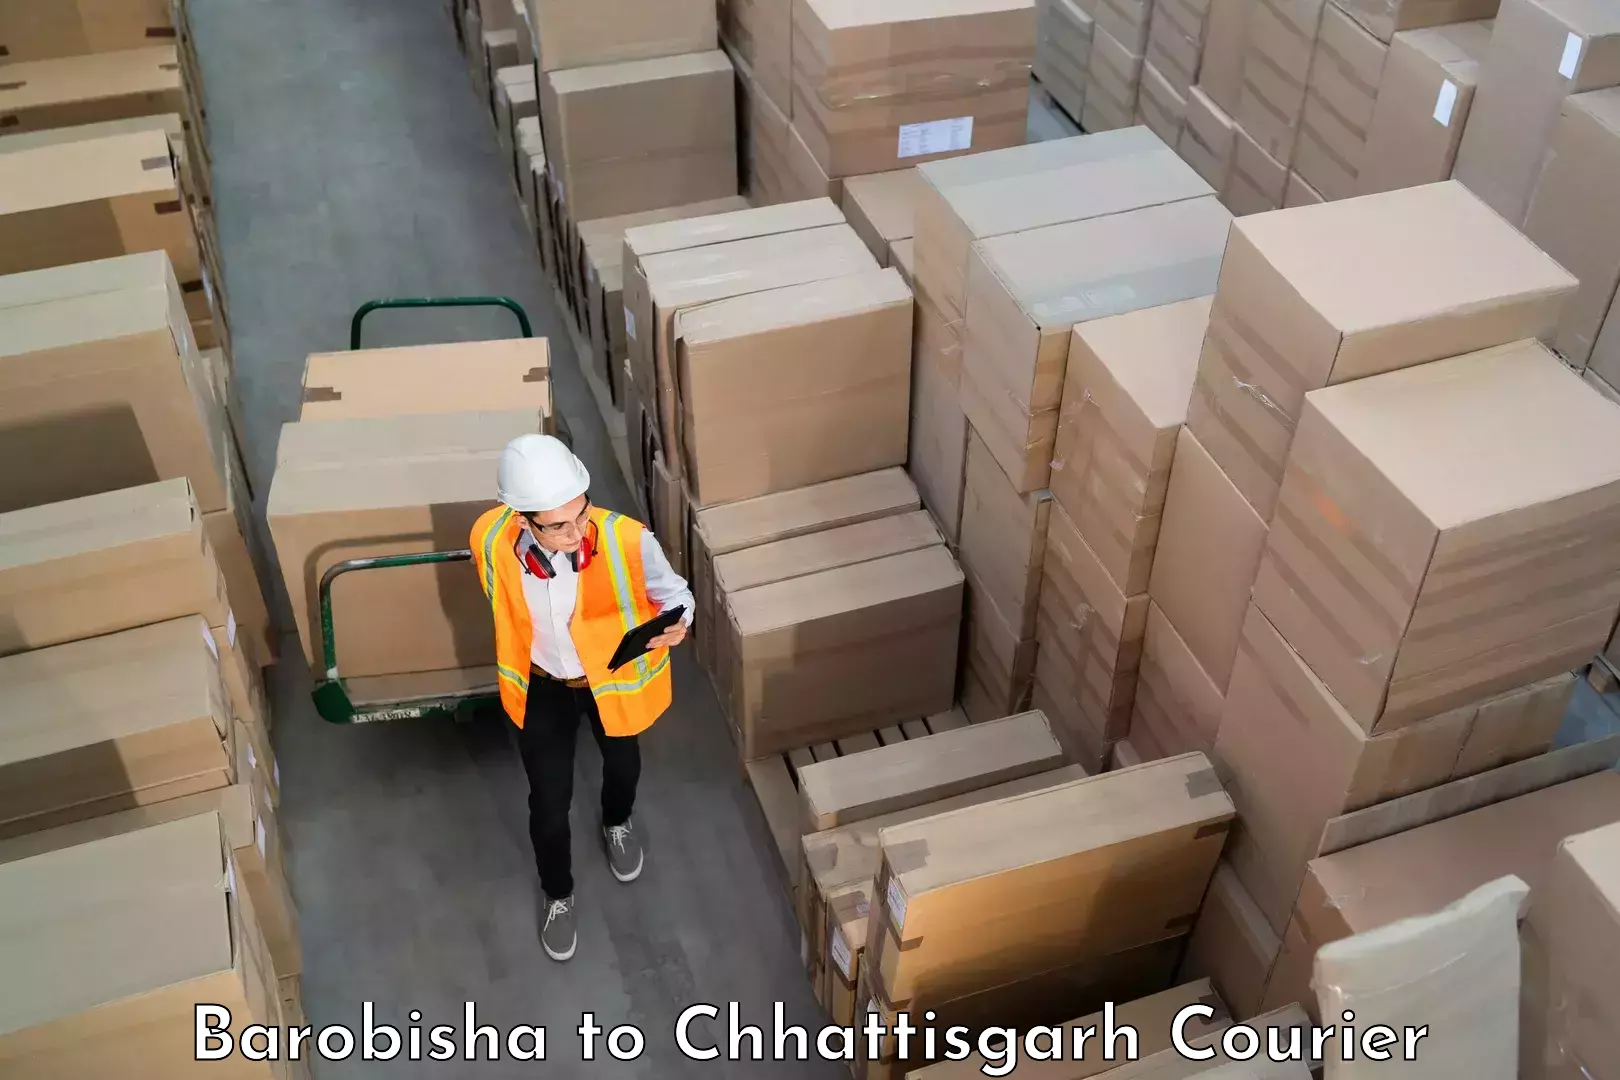 Baggage shipping experts Barobisha to bagbahra